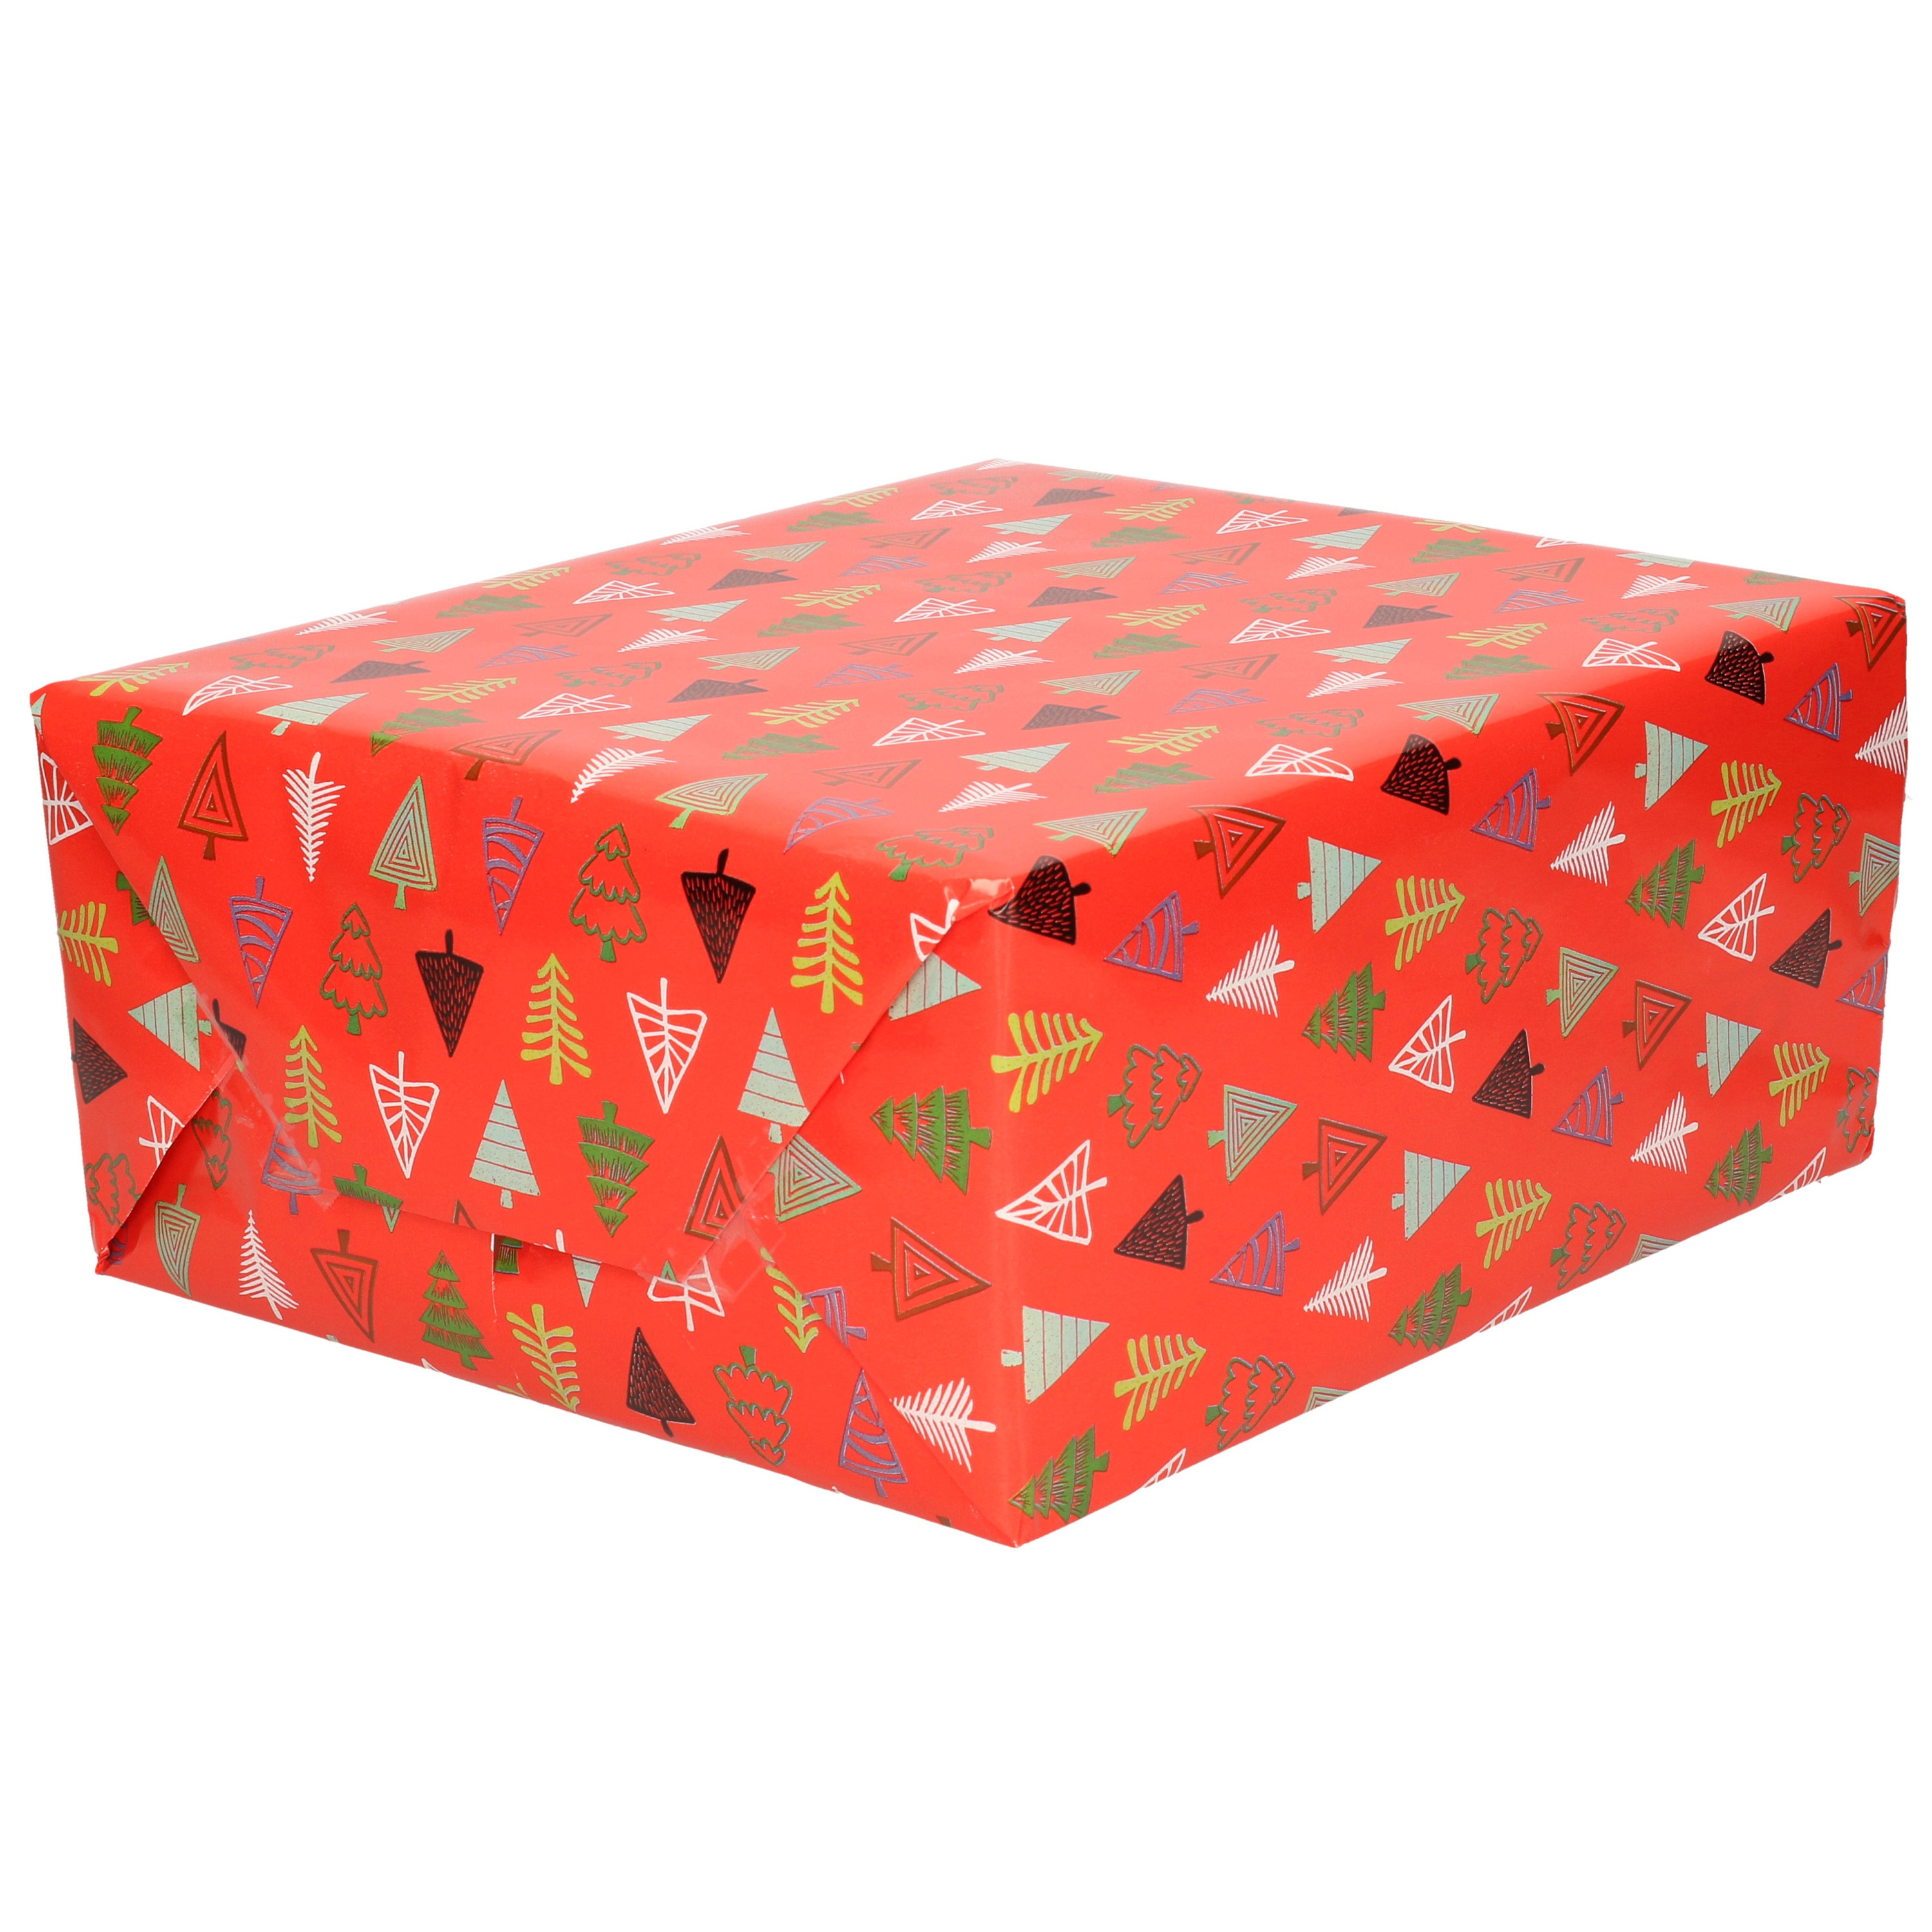 1x Rollen Kerst inpakpapier-cadeaupapier rood-gekleurde bomen 2,5 x 0,7 meter